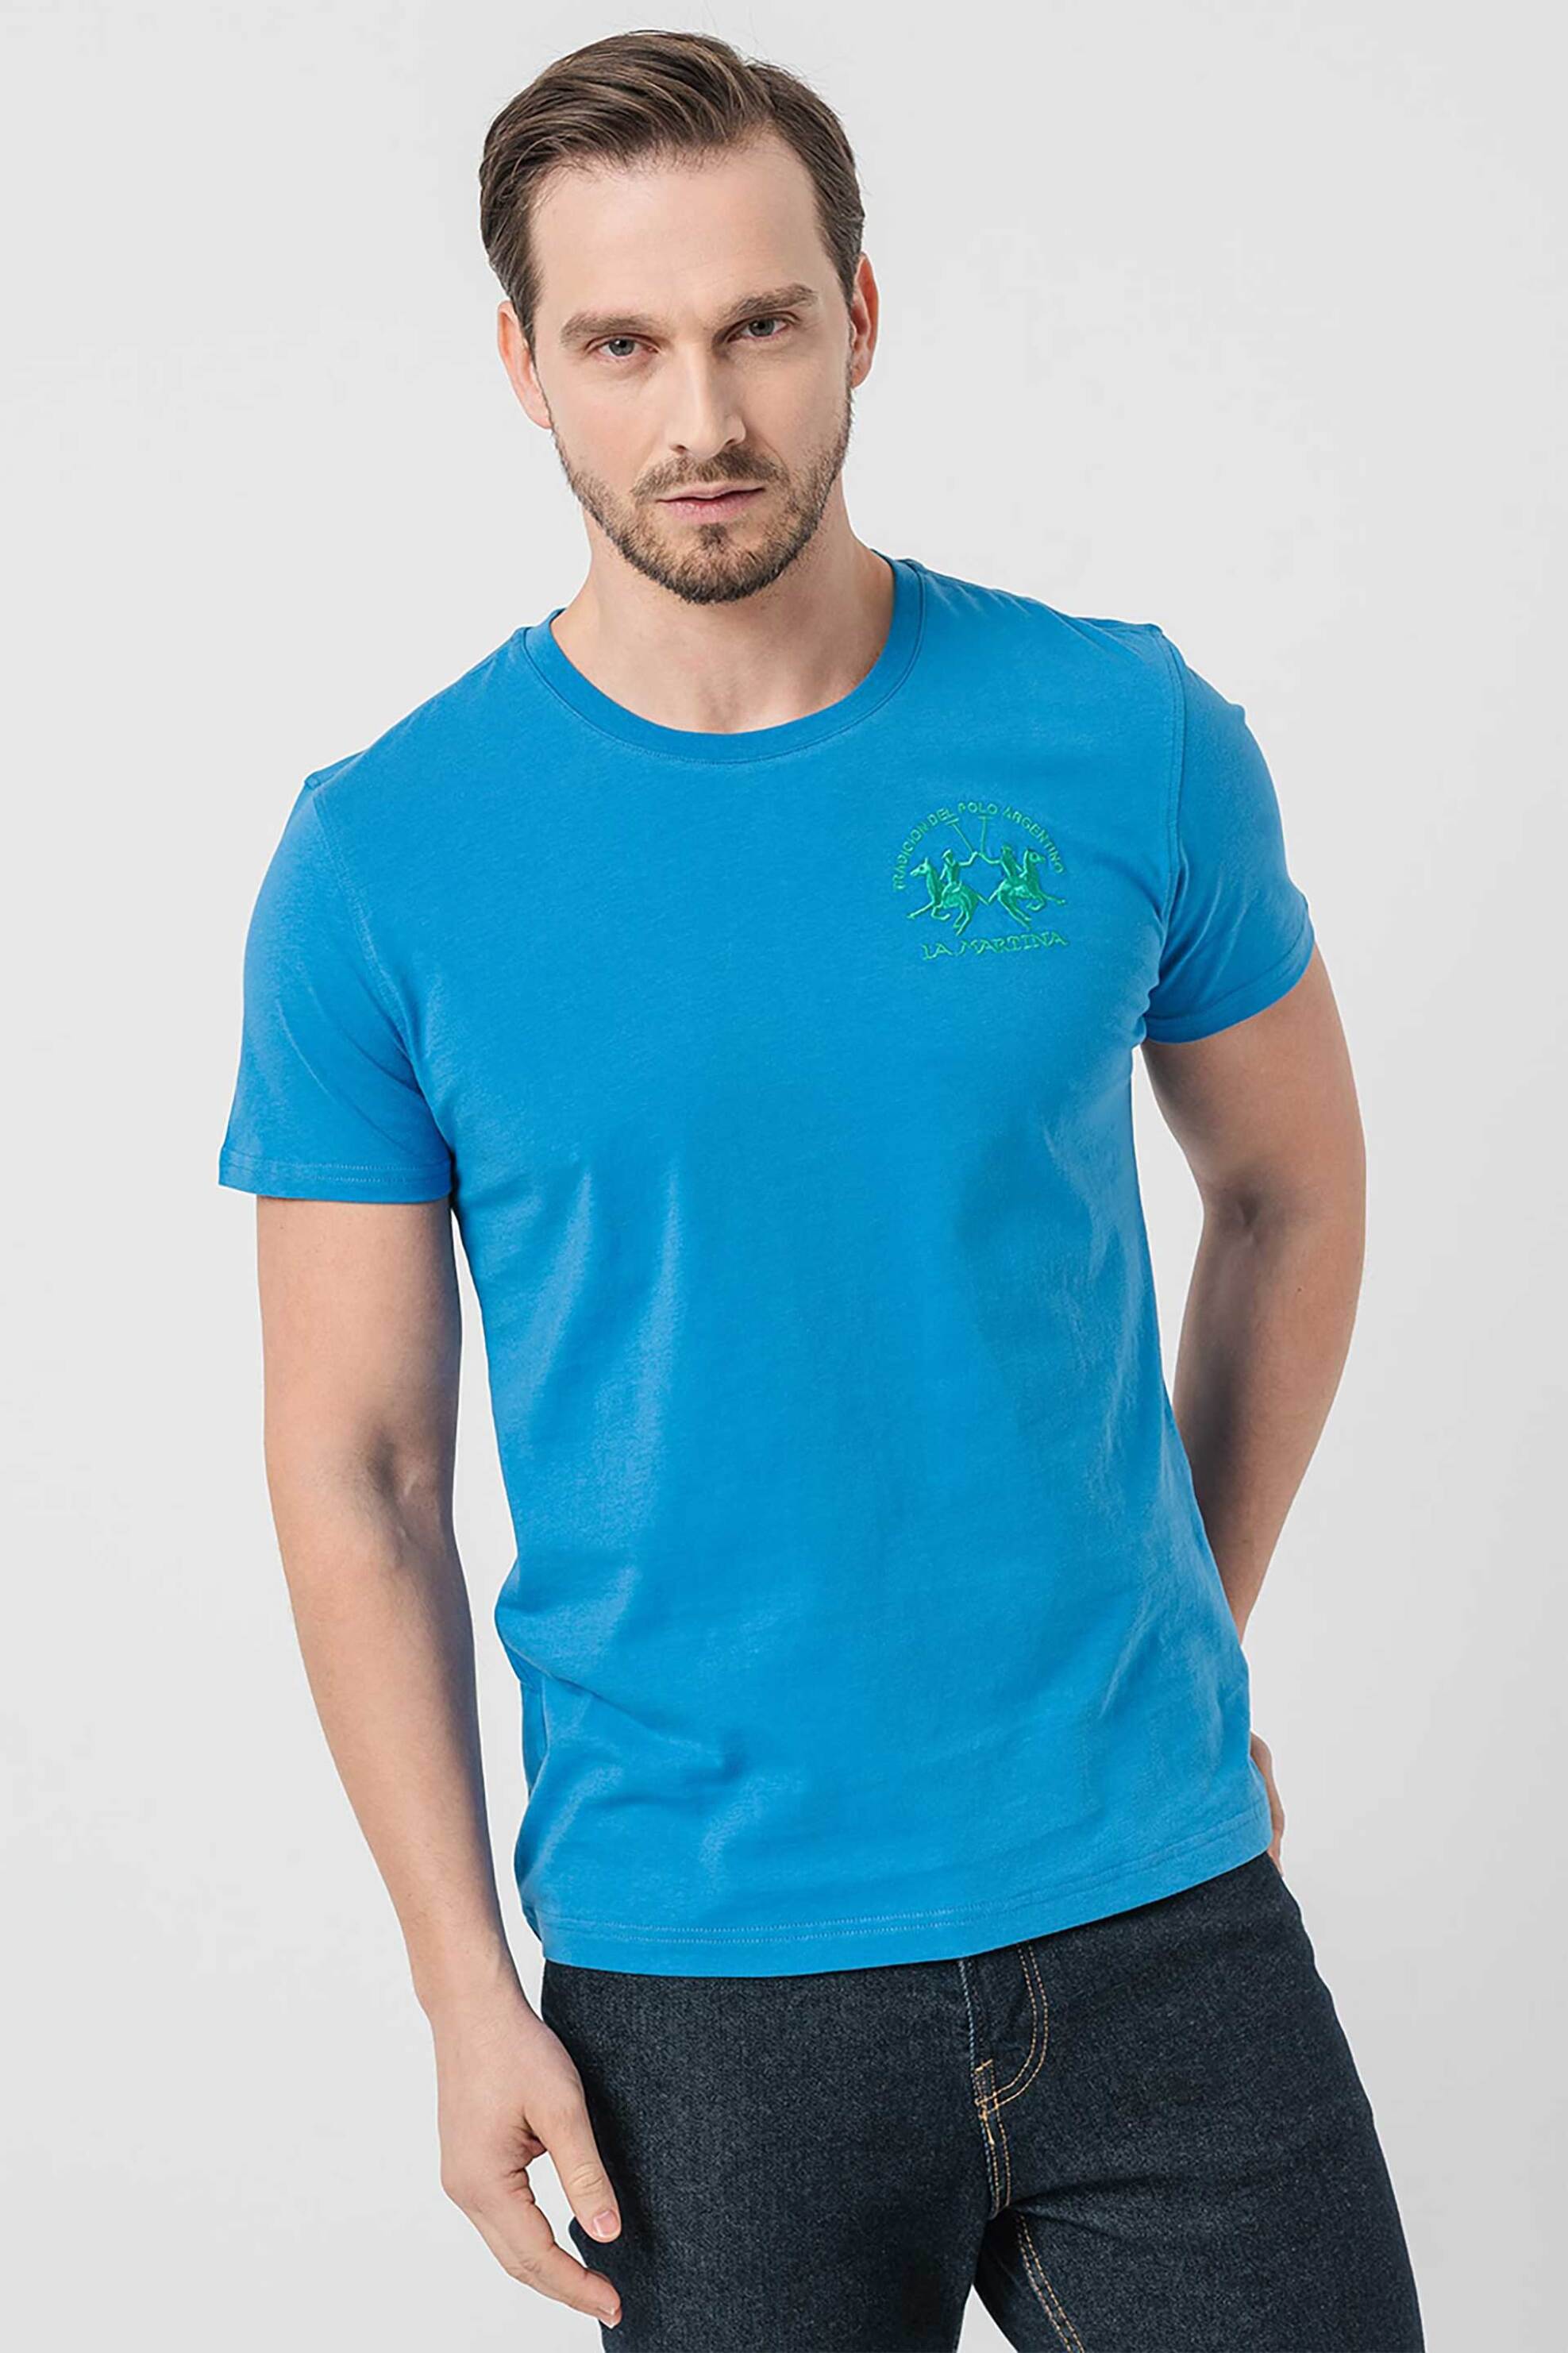 Ανδρική Μόδα > Ανδρικά Ρούχα > Ανδρικές Μπλούζες > Ανδρικά T-Shirts La Martina ανδρικό βαμβακερό T-shirt μονόχρωμο με κεντημένο λογότυπο - YMR009-JS206 Γαλάζιο